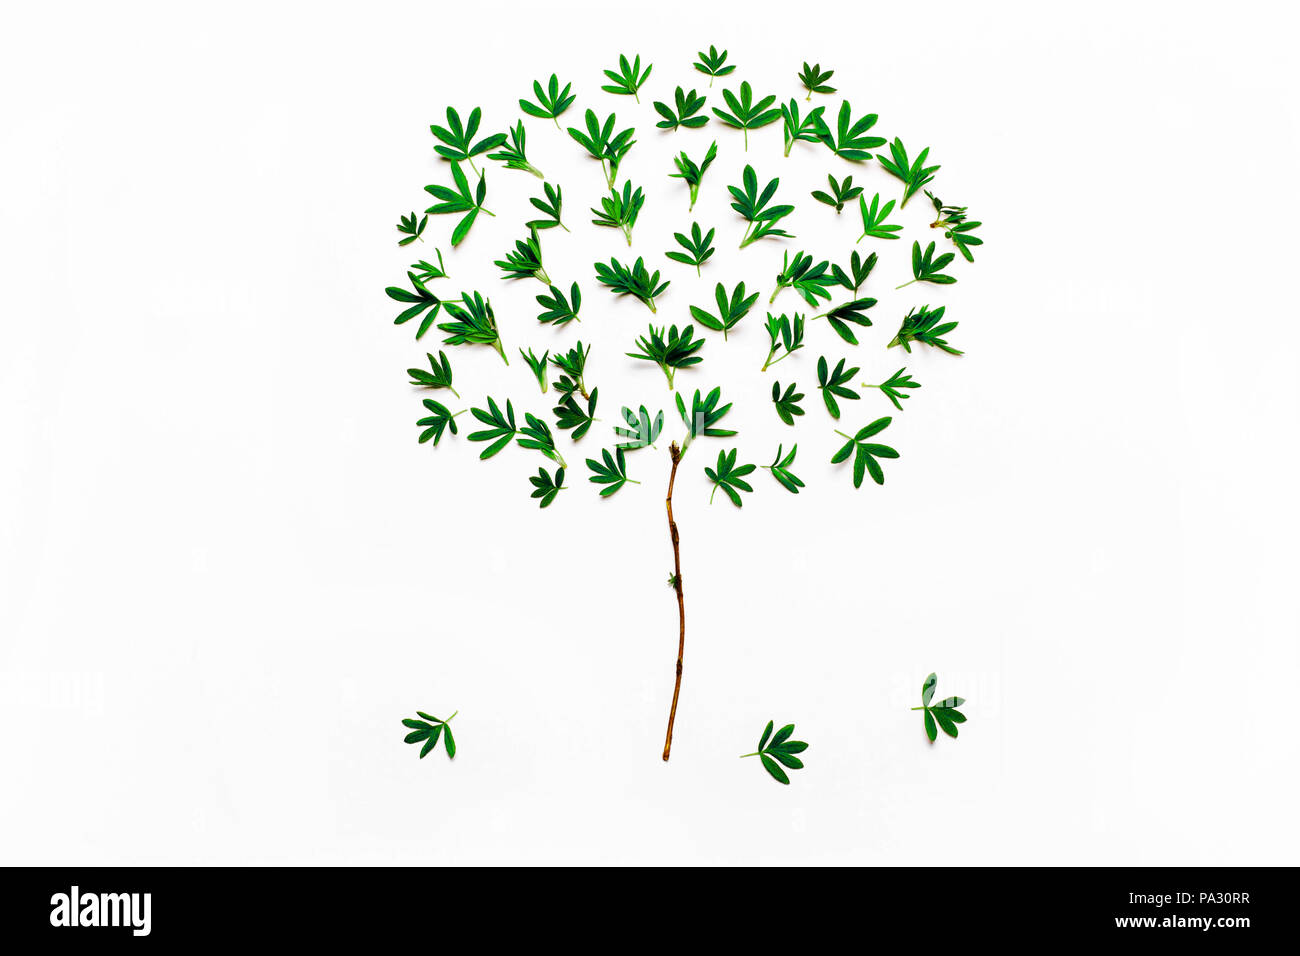 Arborescence constituée de feuilles vertes. Minimaliste concept minimal naturel.Vue de dessus, télévision Banque D'Images